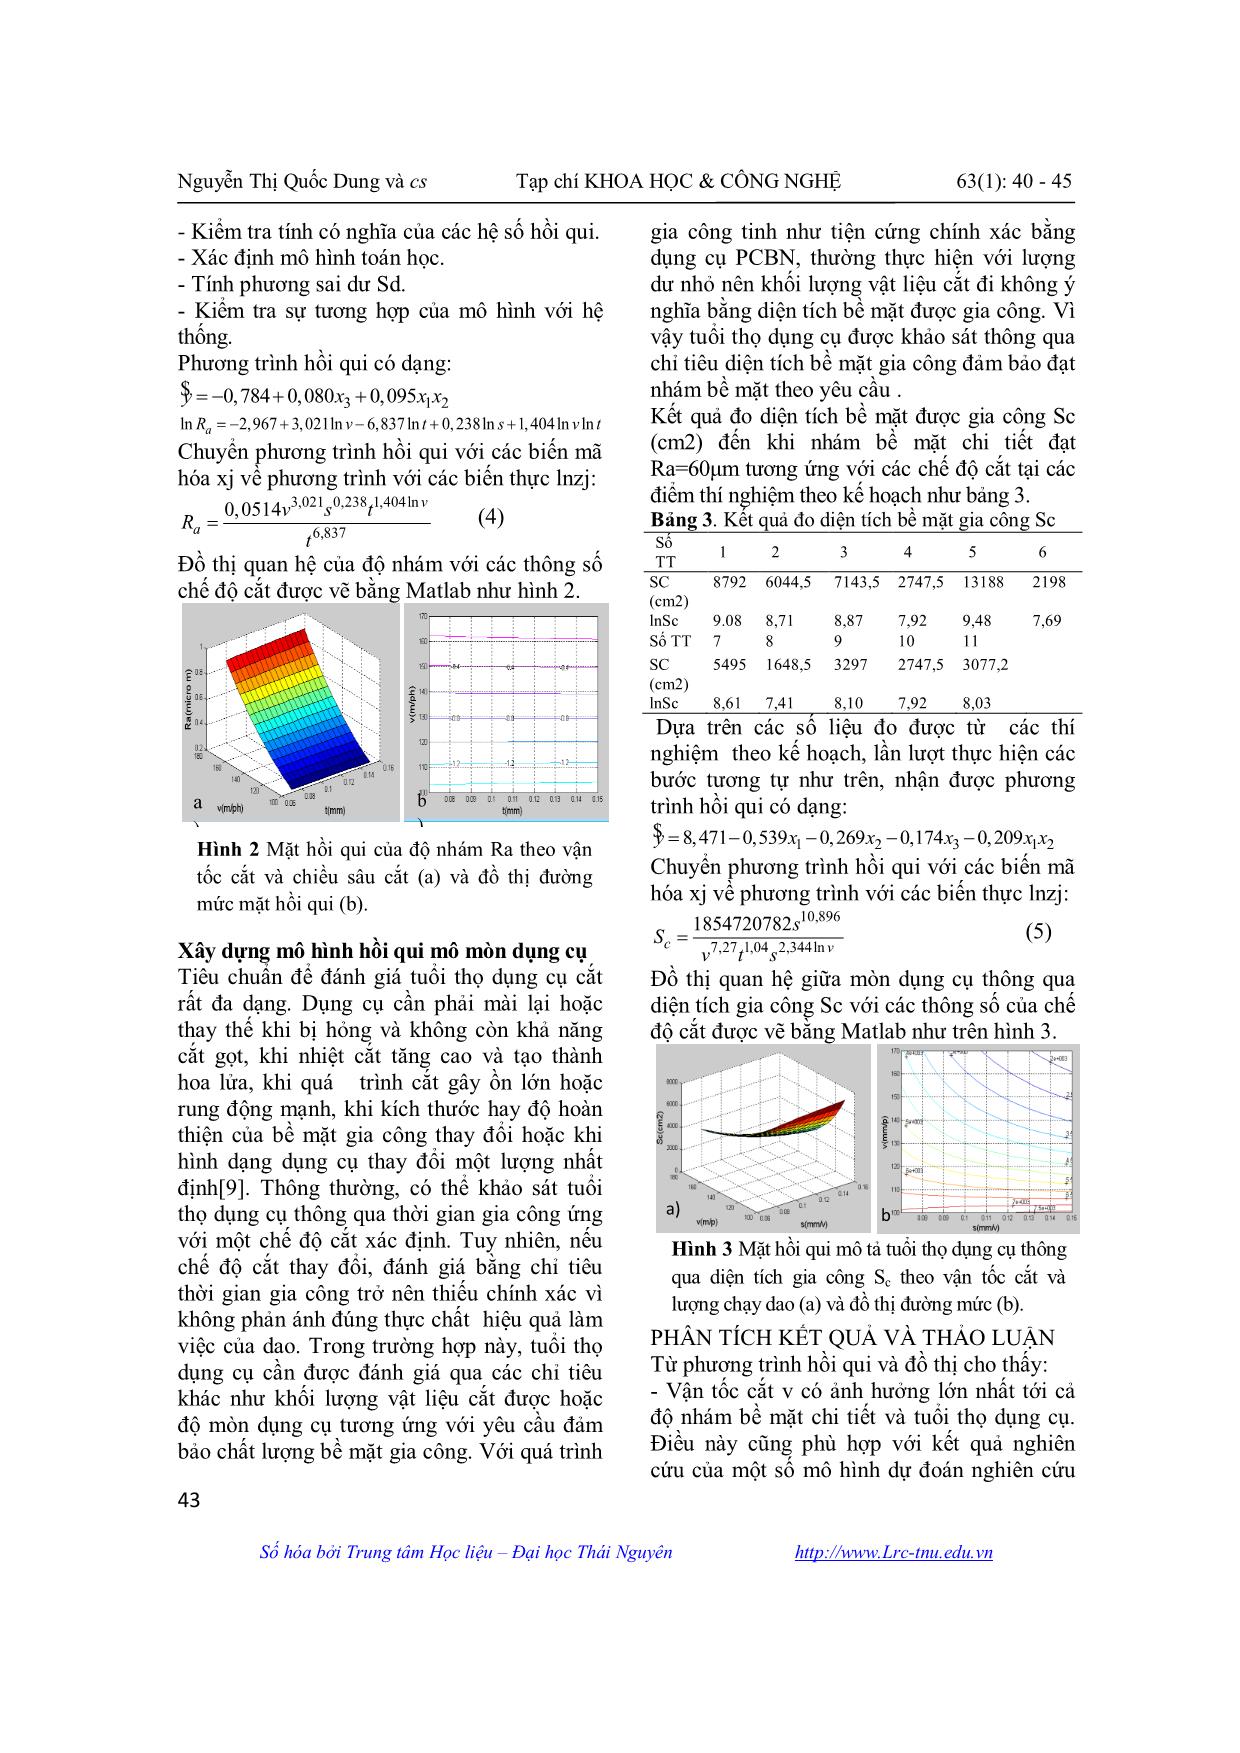 Mô hình dự đoán nhám bề mặt và mòn dụng cụ trong tiện cứng chính xác bằng dụng cụ cắt PCBN trang 4